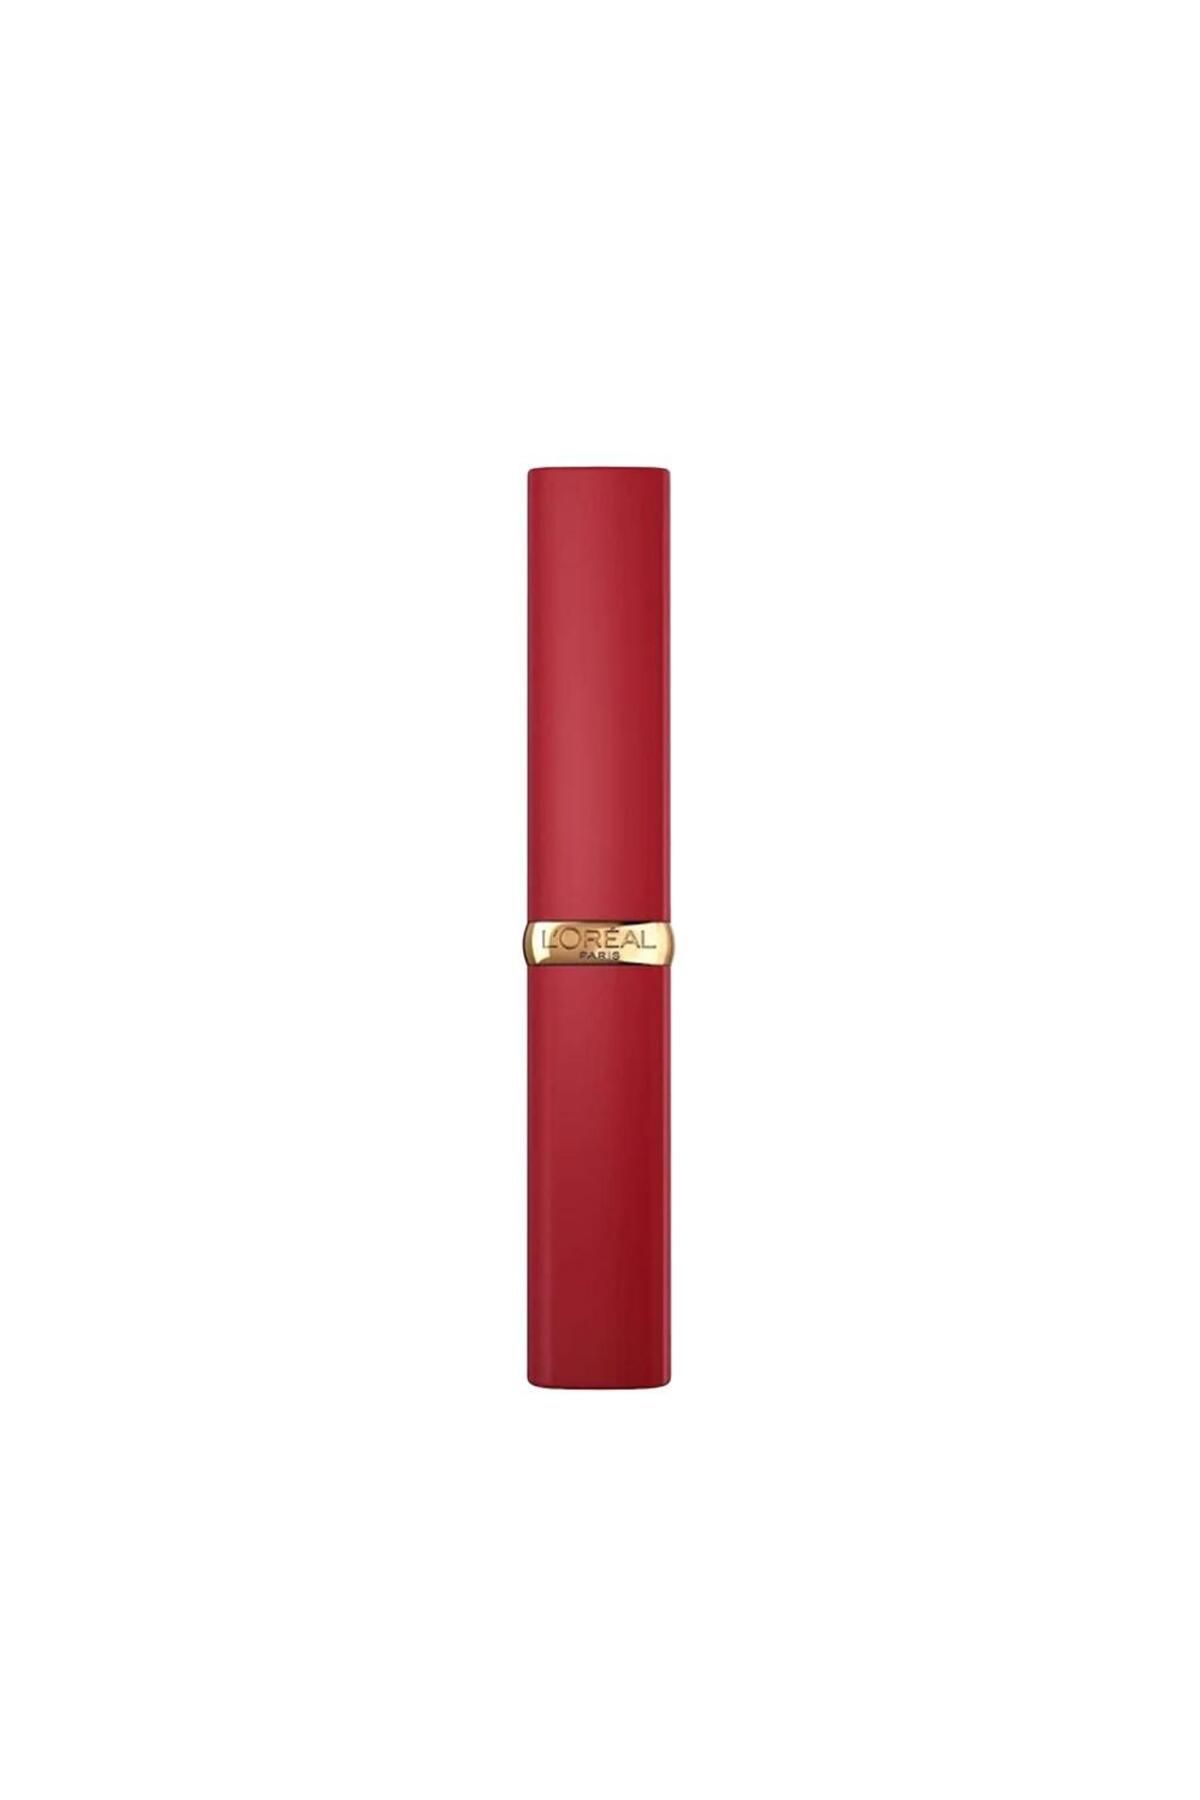 L'Oreal Paris Color Riche Colors Of Worth Intense Volume Matte Ruj - 300 Rouge Confident